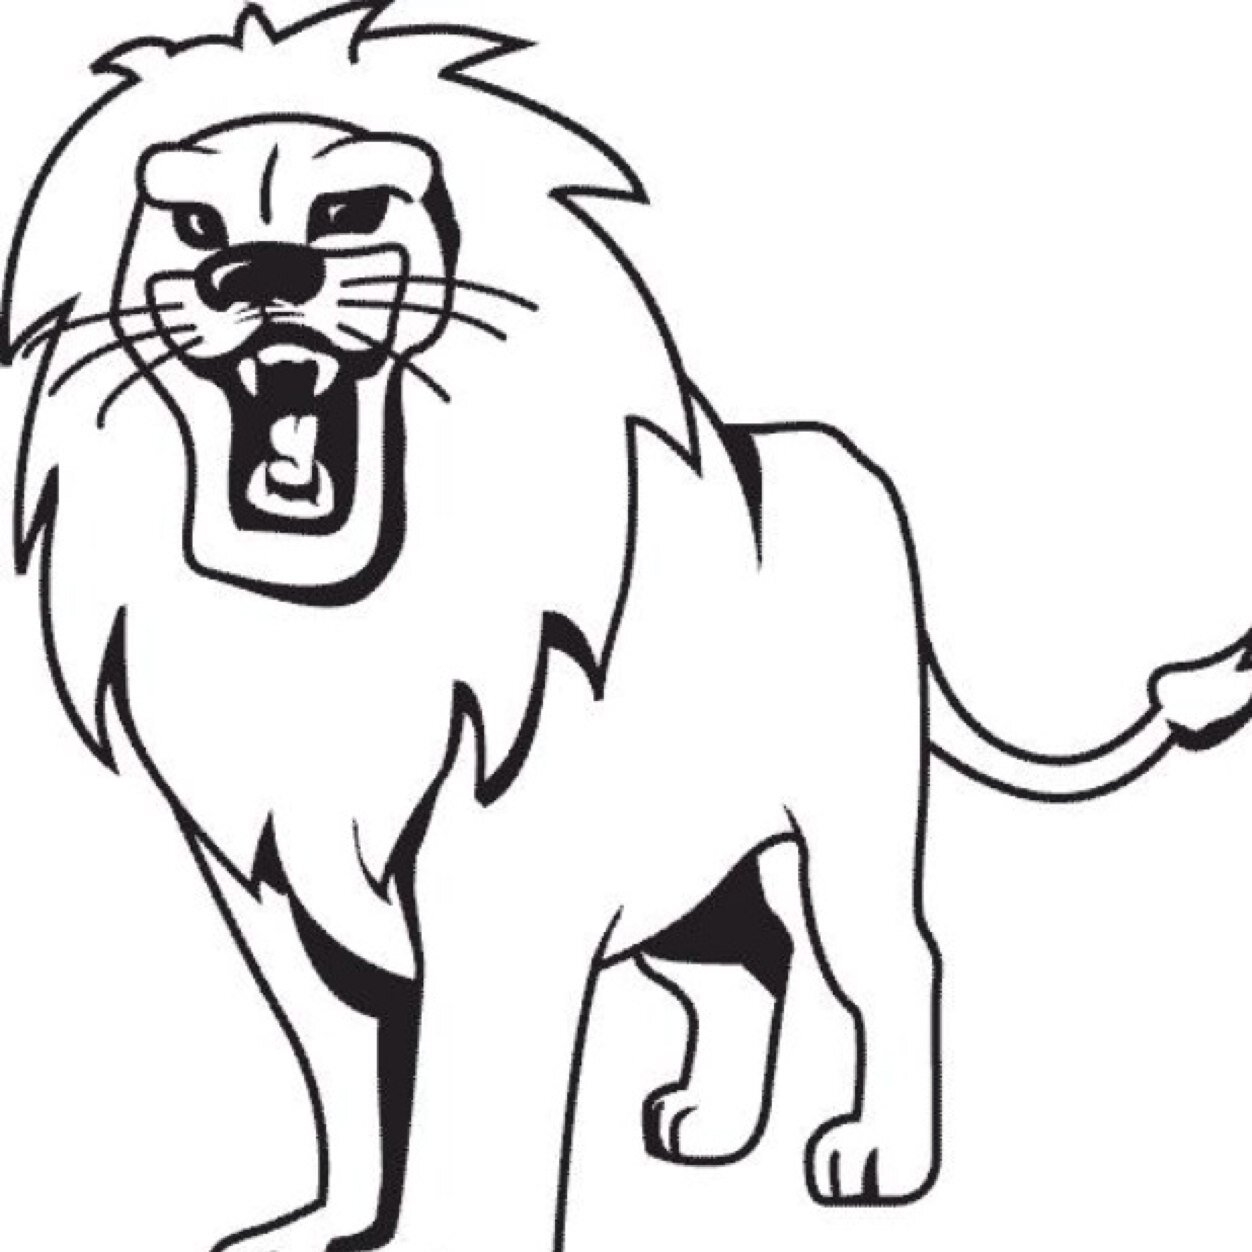 Лев, тигр: изображения без лицензионных платежей